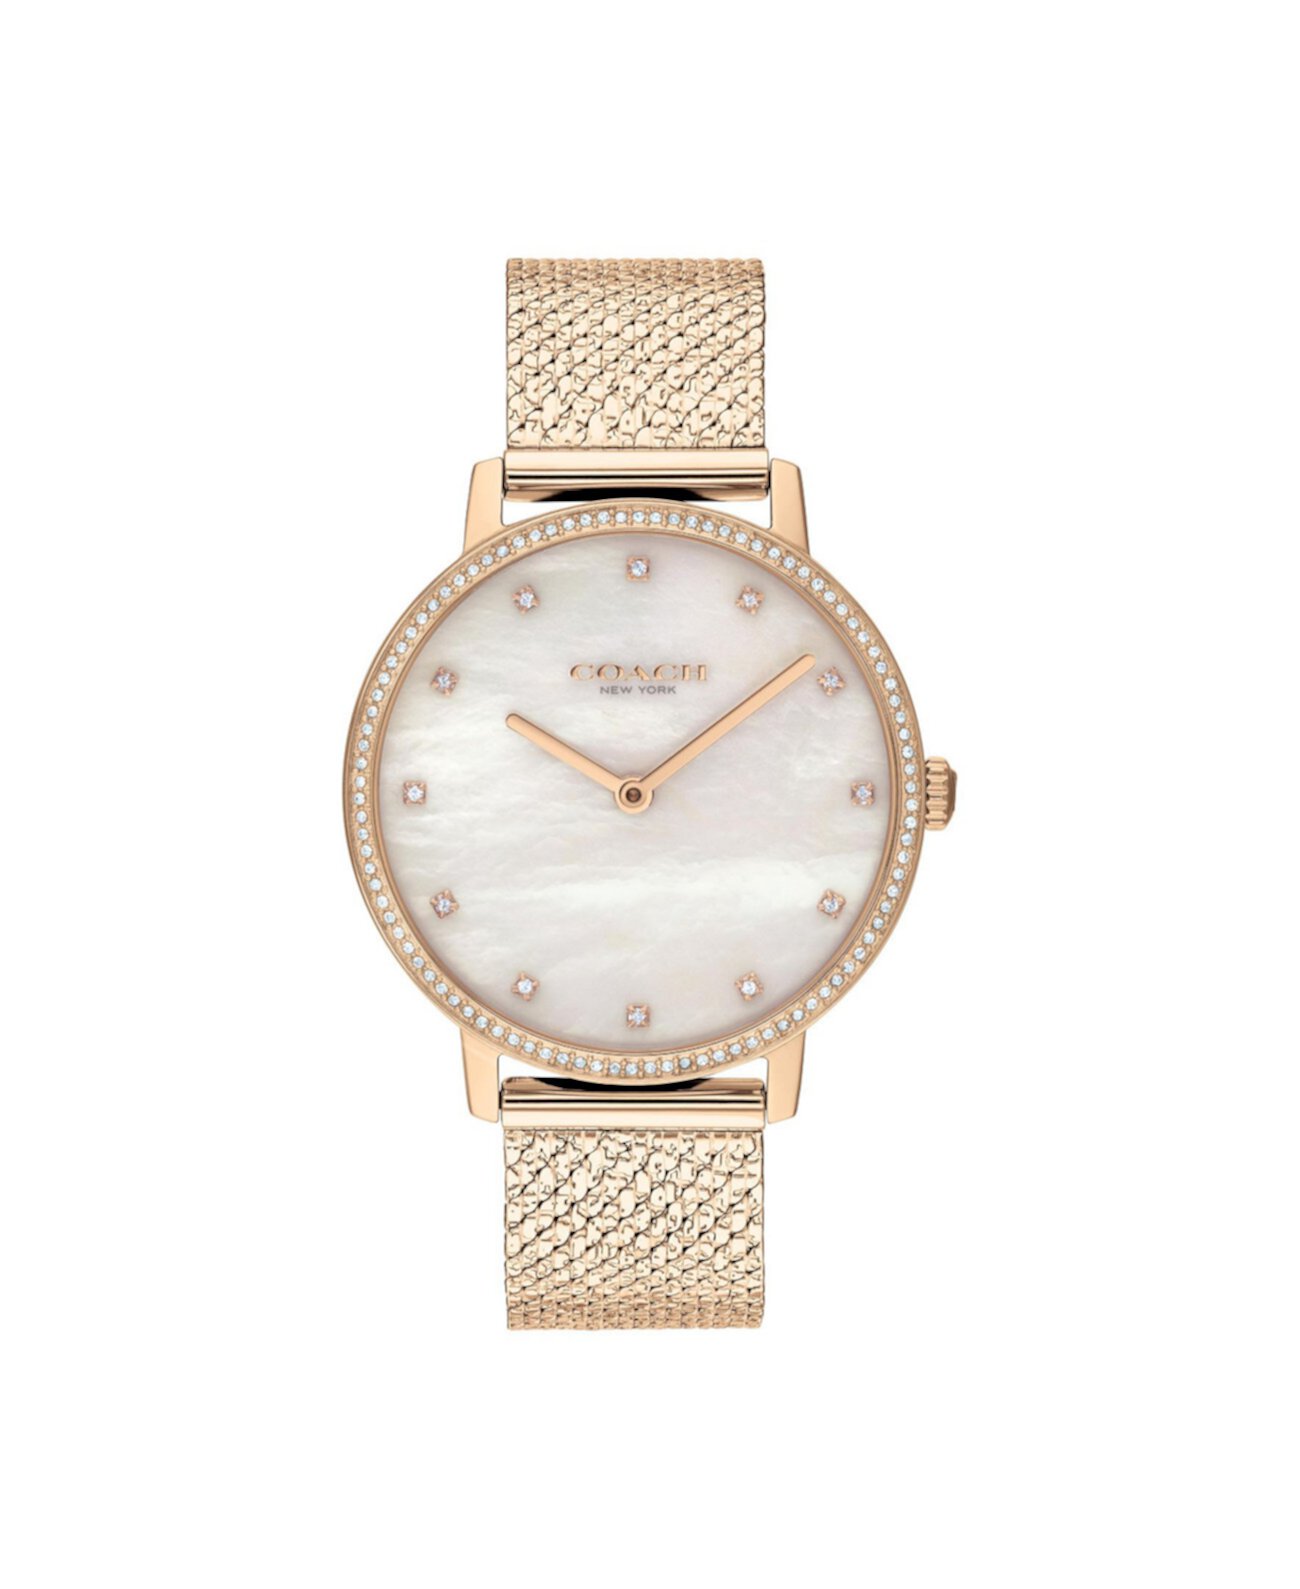 Женские часы Audrey Carnation с золотым браслетом в сеточку, 35 мм COACH